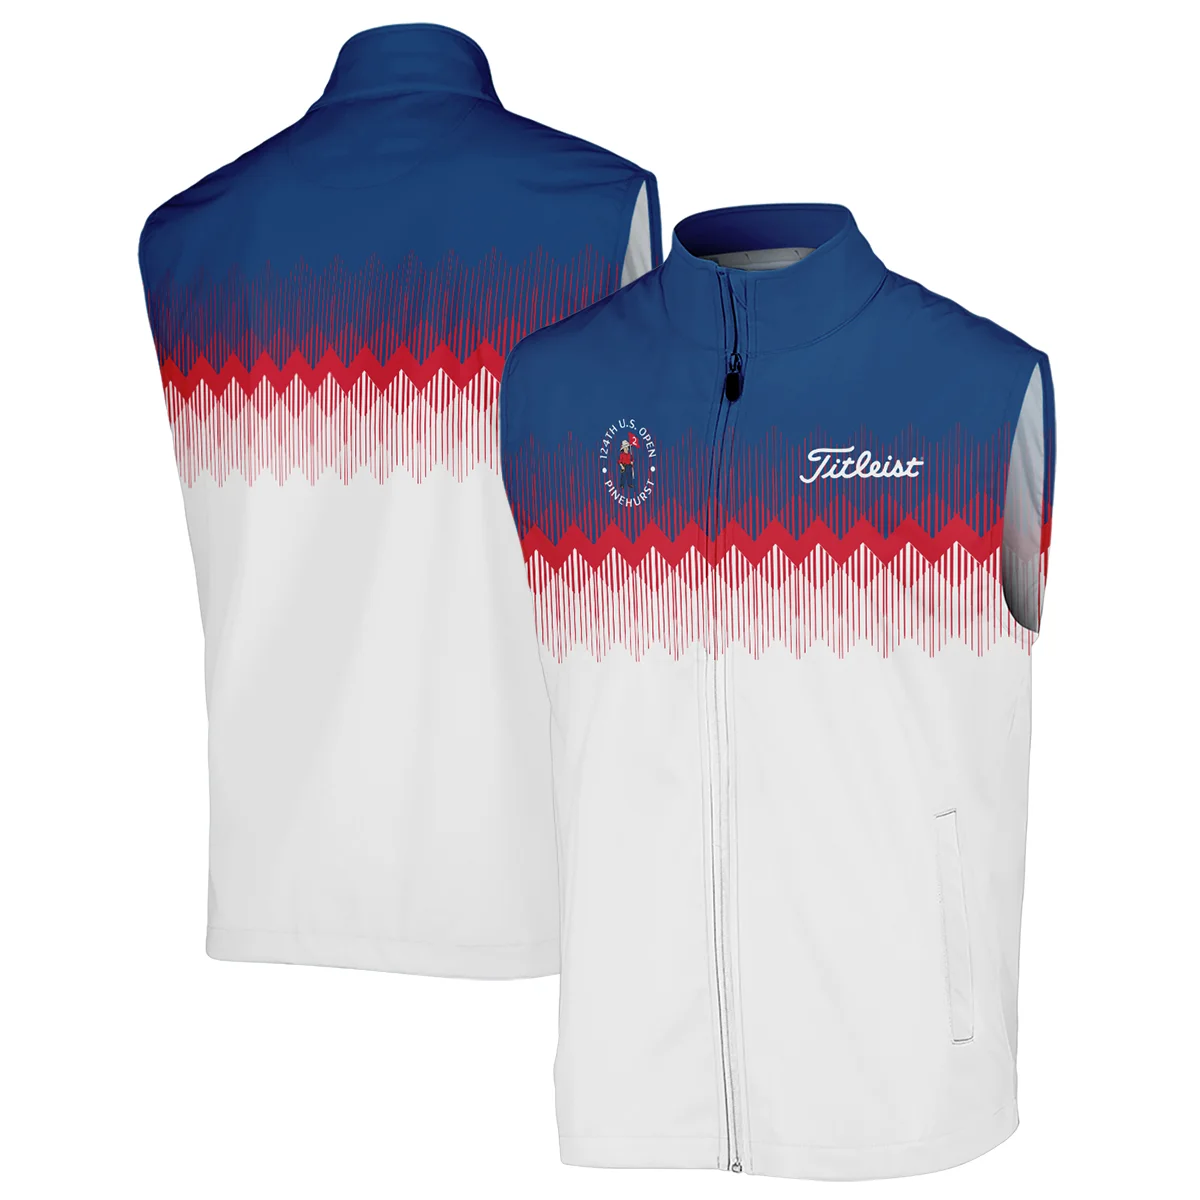 Titleist 124th U.S. Open Pinehurst Zipper Polo Shirt Blue Red Fabric Pattern Golf Zipper Polo Shirt For Men